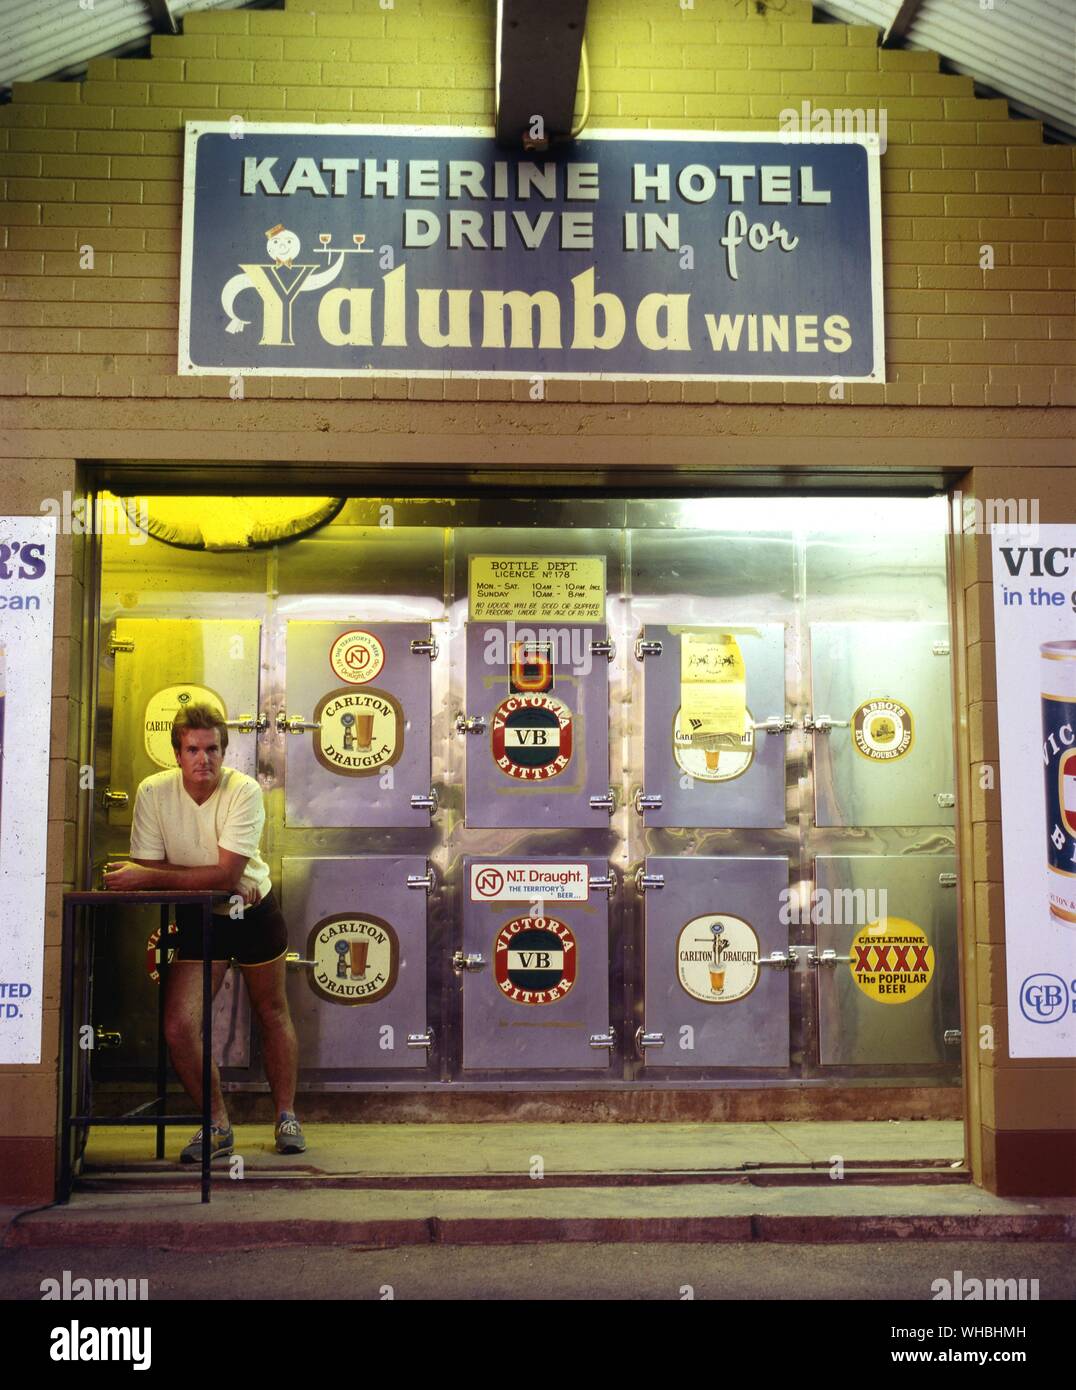 Fabricación de la cerveza y el Vino: la unidad a través de la botella en la tienda por Katherine Hotel , Western Australia Foto de stock